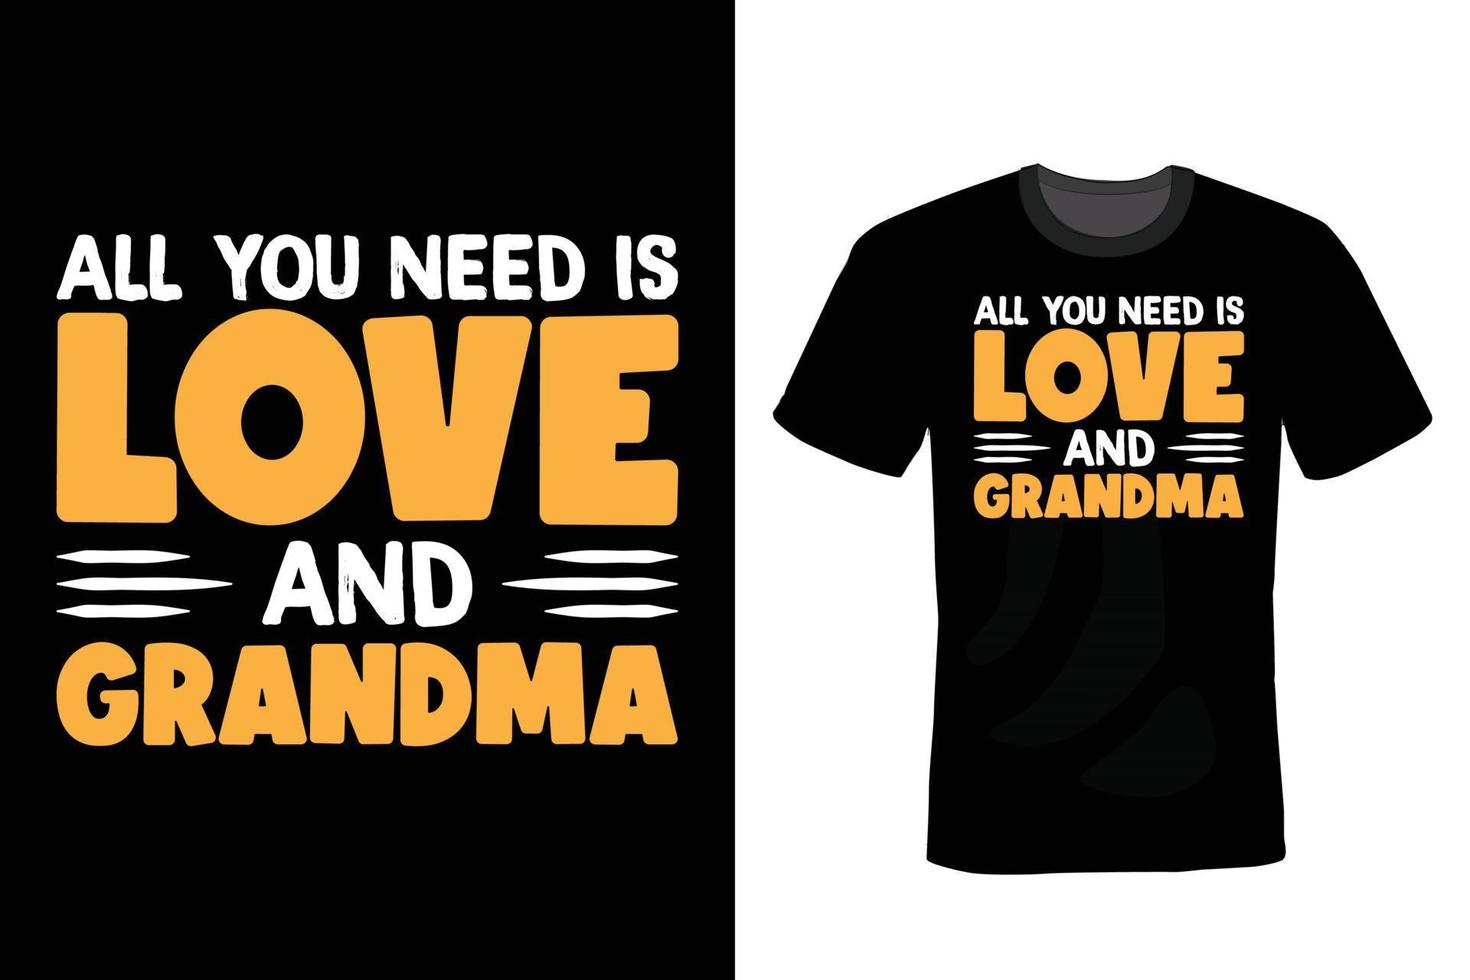 design della maglietta della nonna, vintage, tipografia vettore